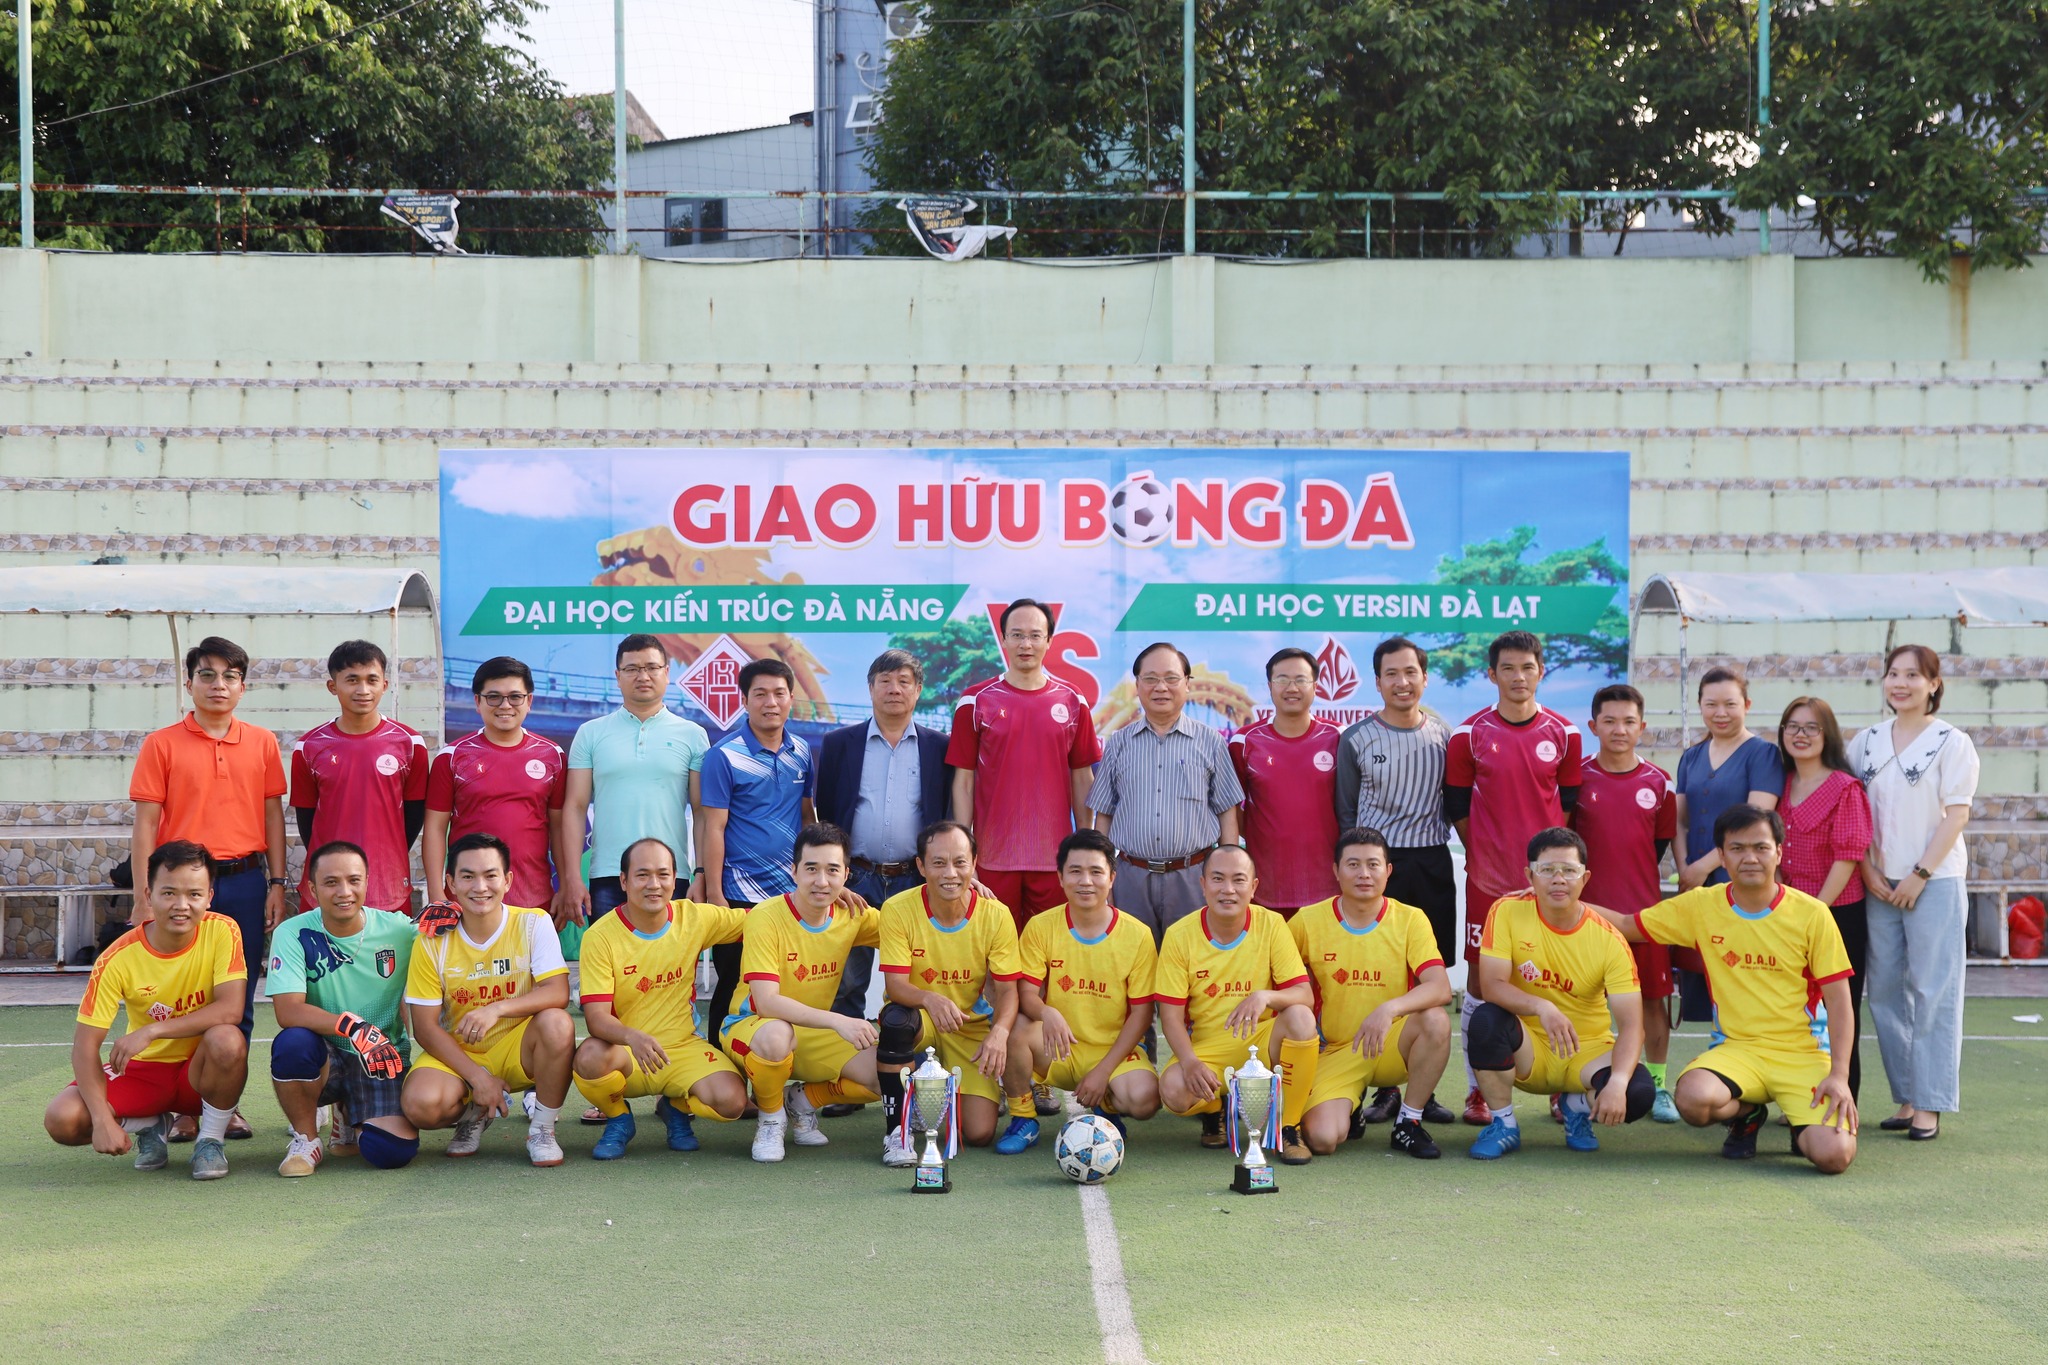 Giao hữu bóng đá giữa Trường Đại học Kiến trúc Đà Nẵng và Trường Đại học Yersin Đà lạt 